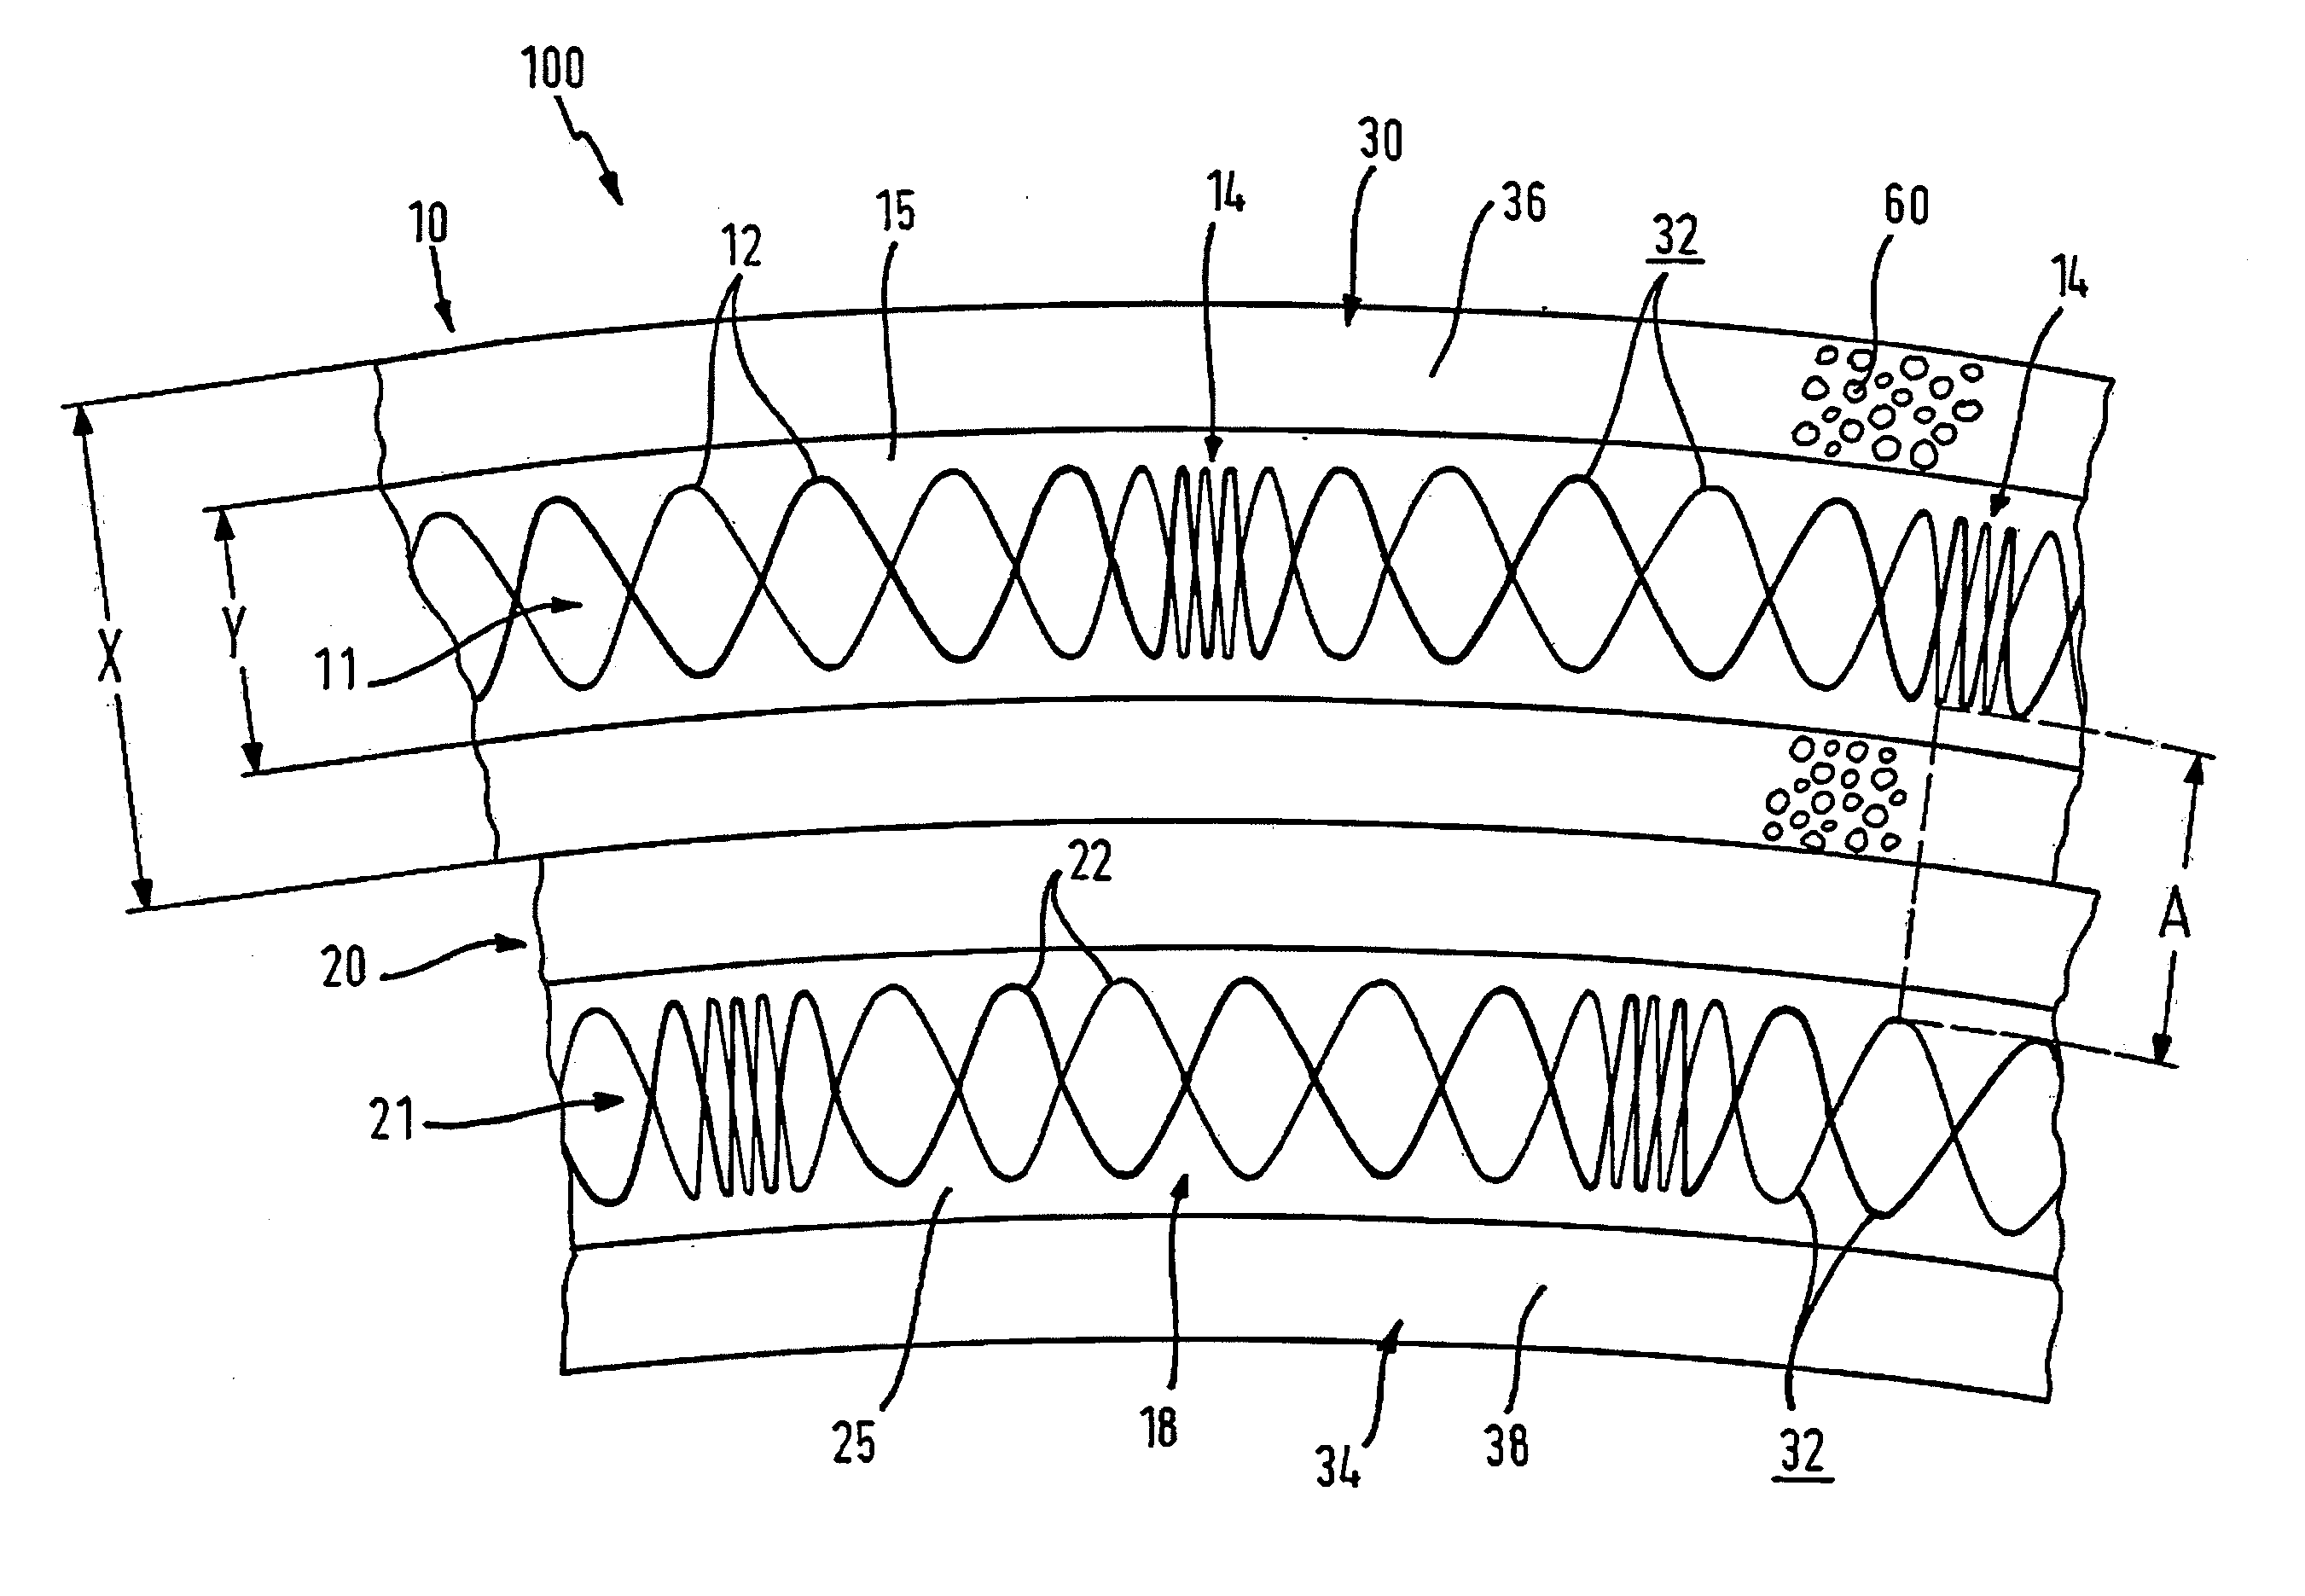 Cable arrangement